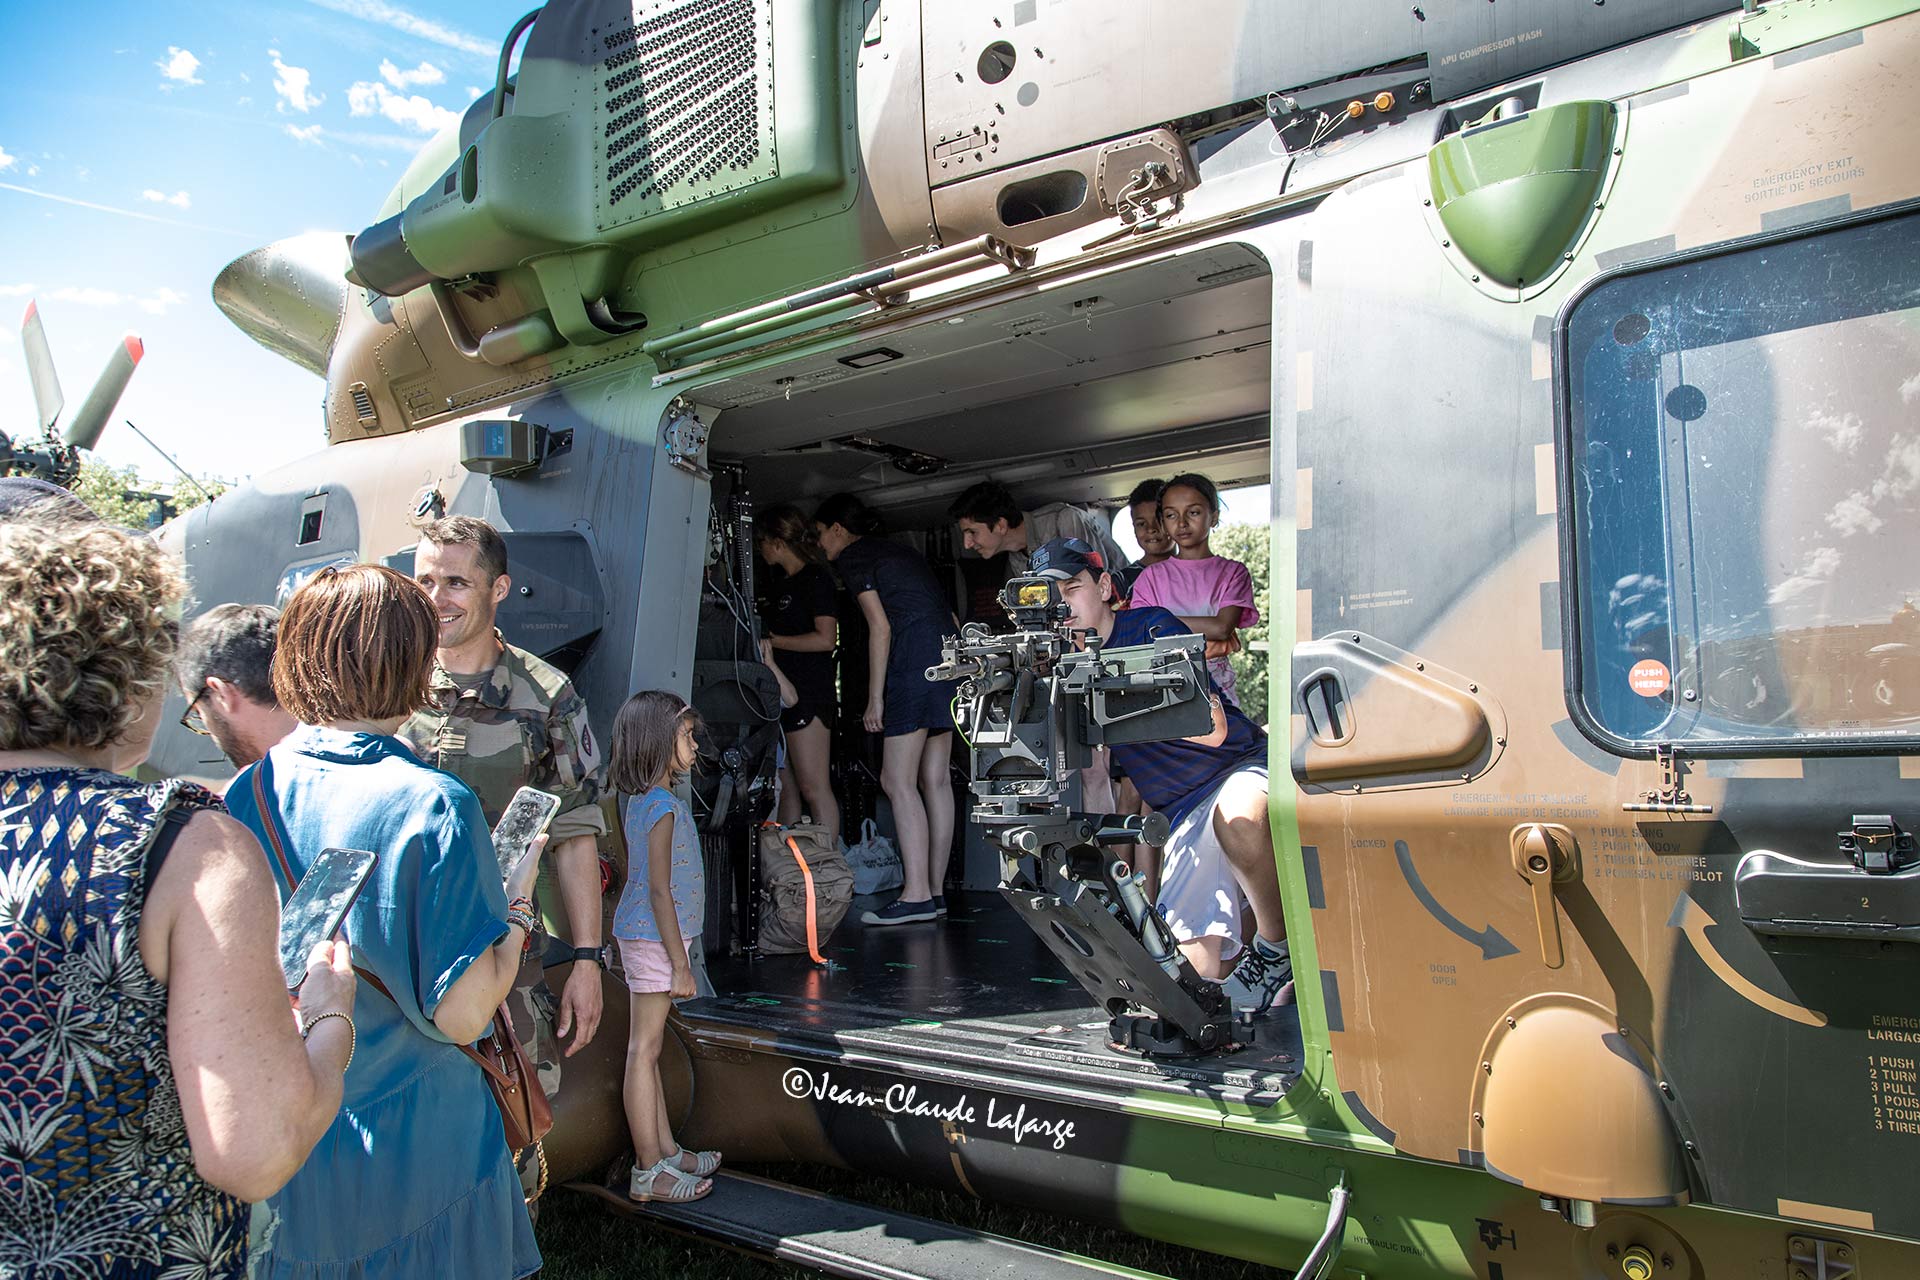 Le public visite les matériels à l'intérieur d'un hélicoptère militaire.